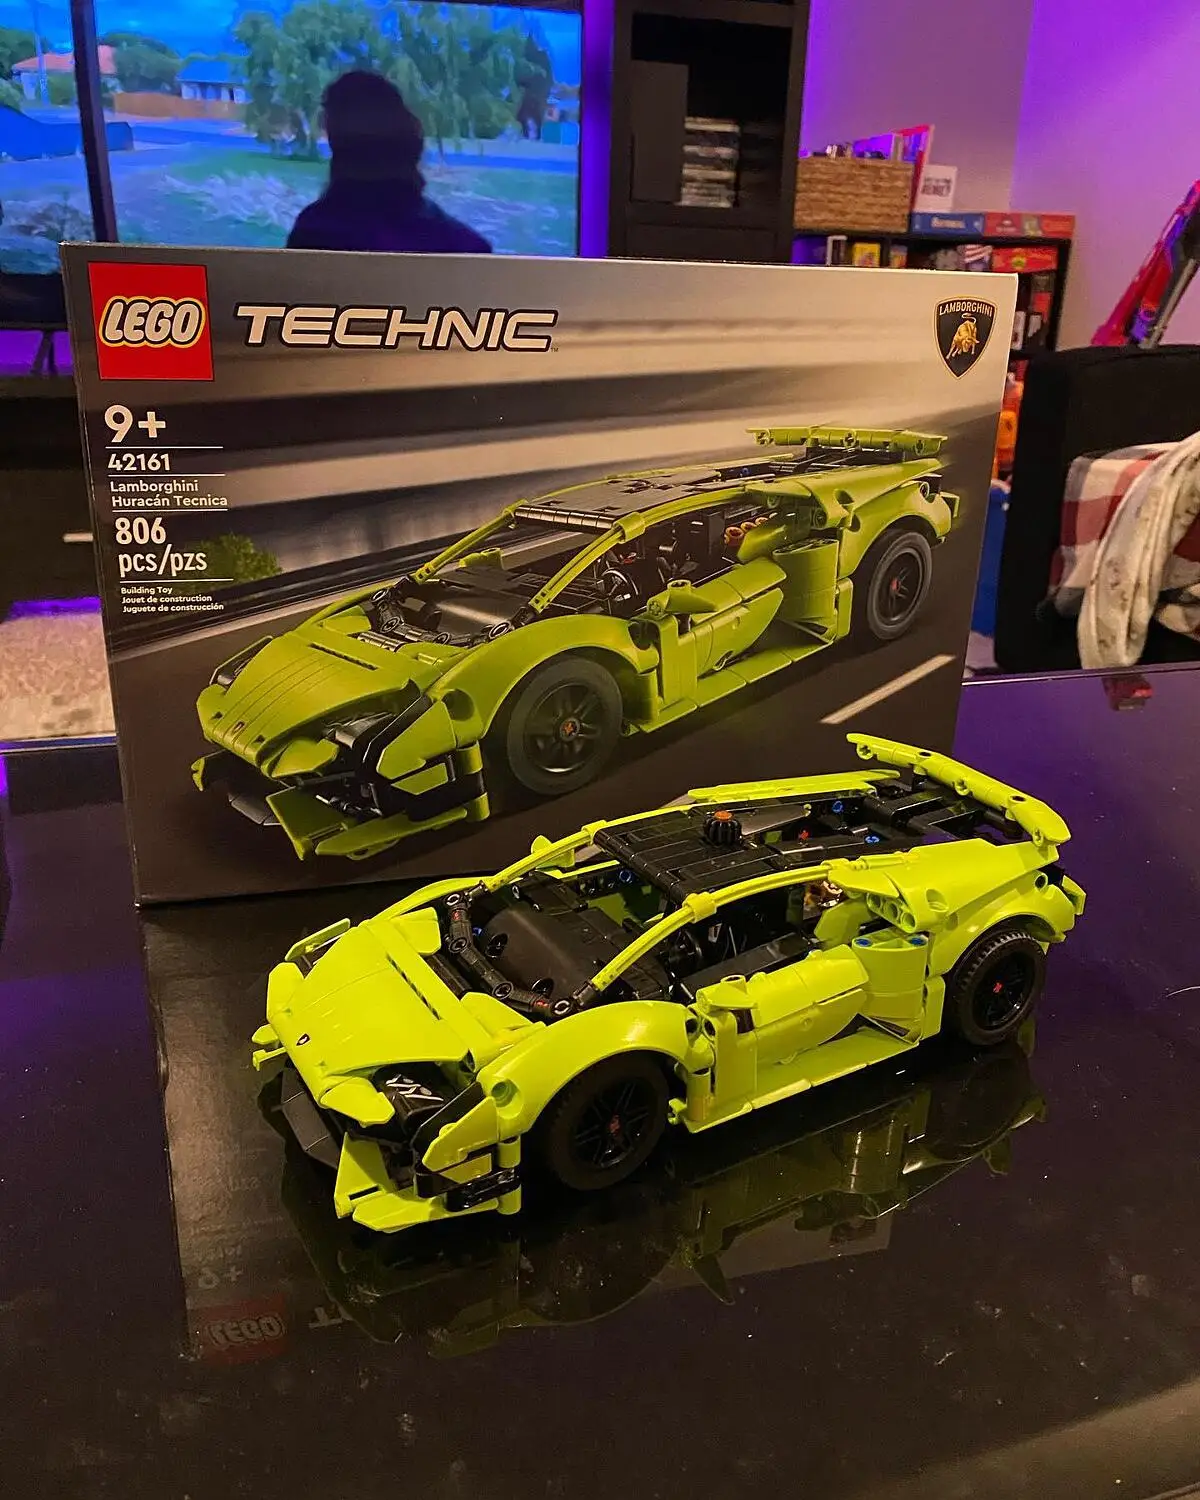 LEGO® Technic 42161 Lamborghini Huracán Tecnica, Kit de Maquette de Voiture  pour Enfants Fans de